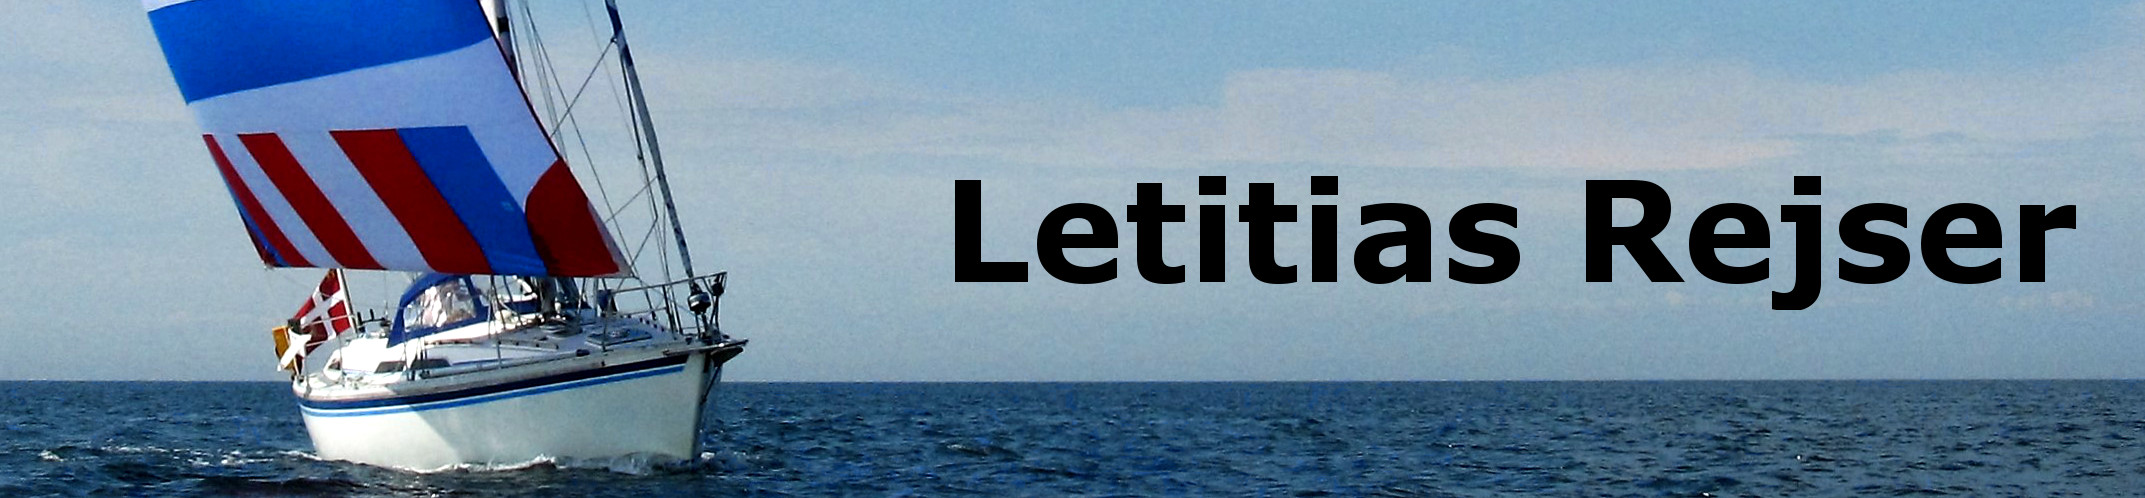 Letitias rejser